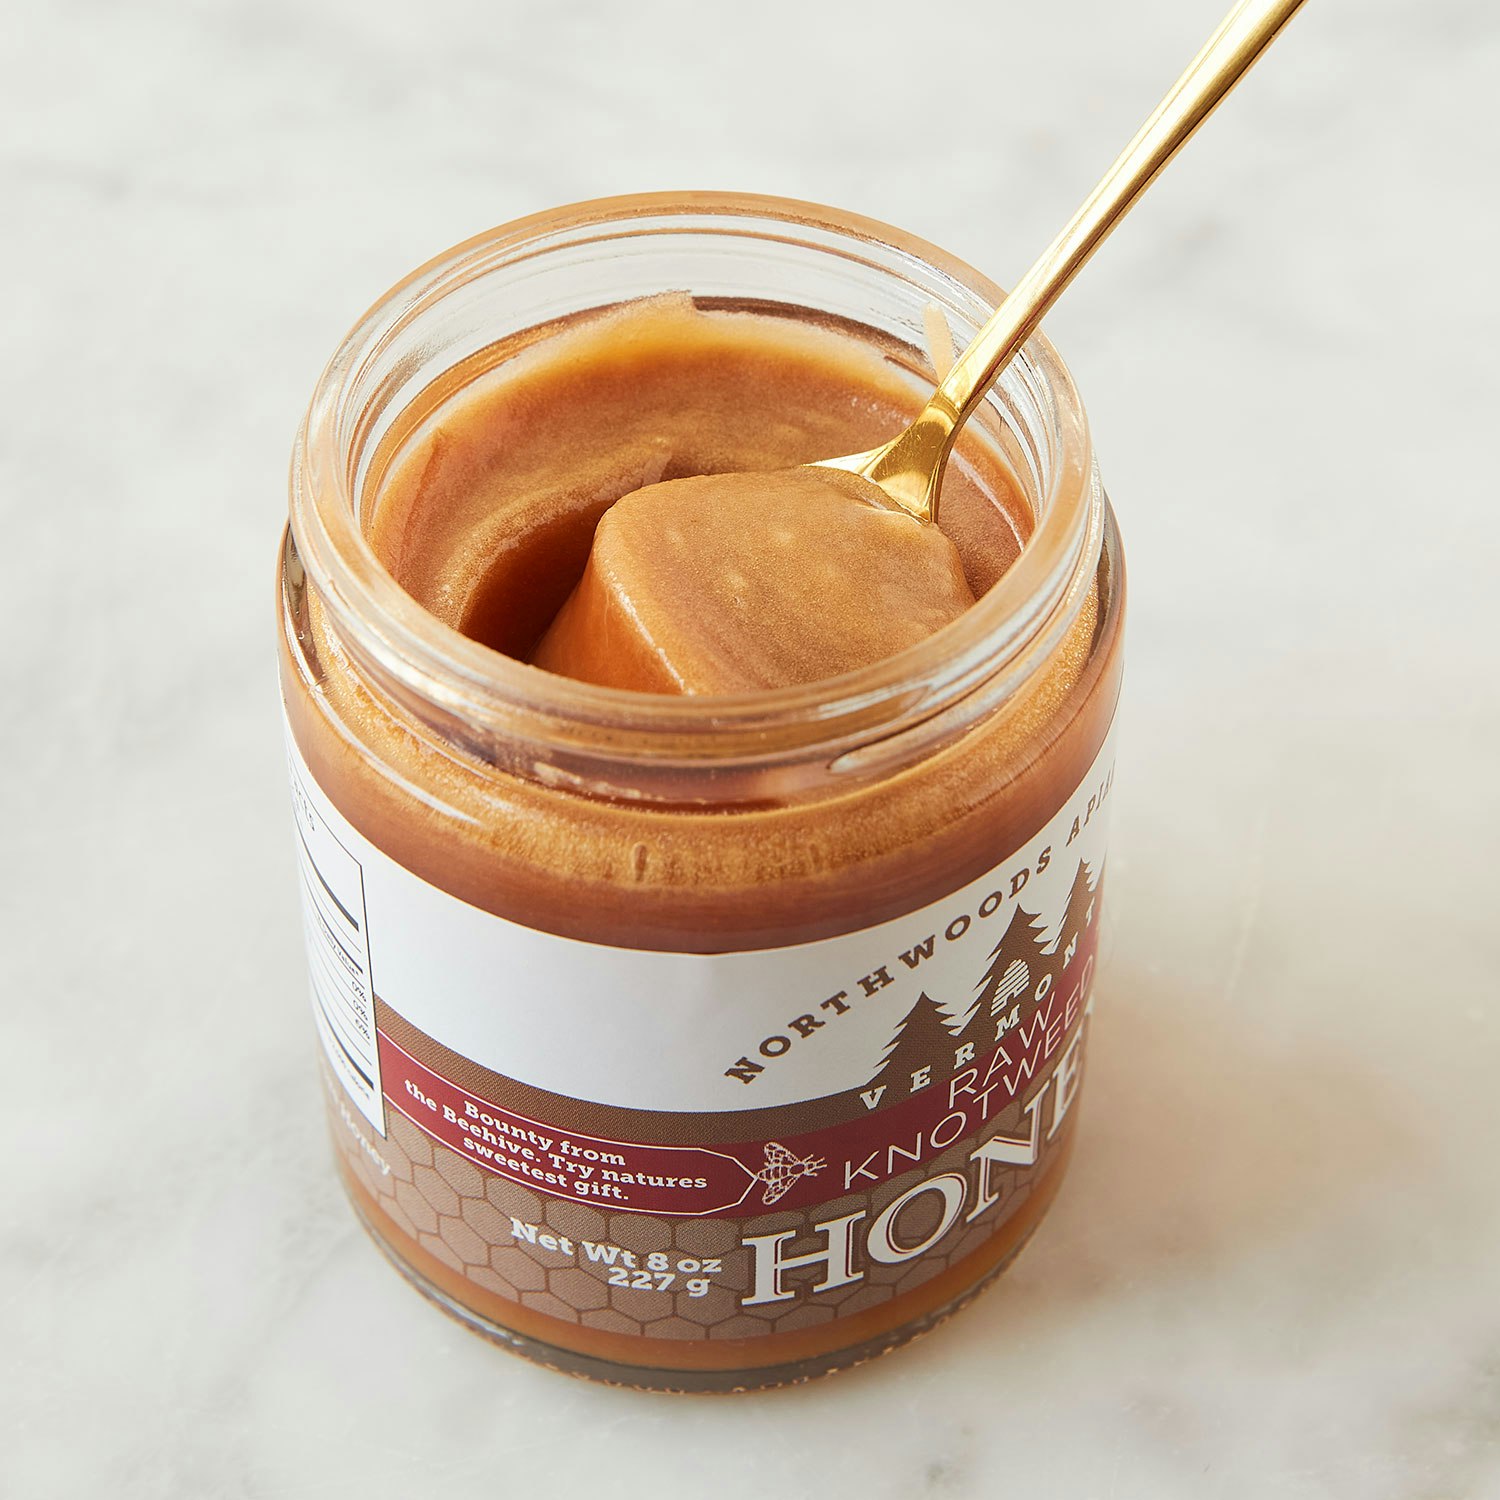 Northwoods Apiaries Knotweed Honey specialty foods